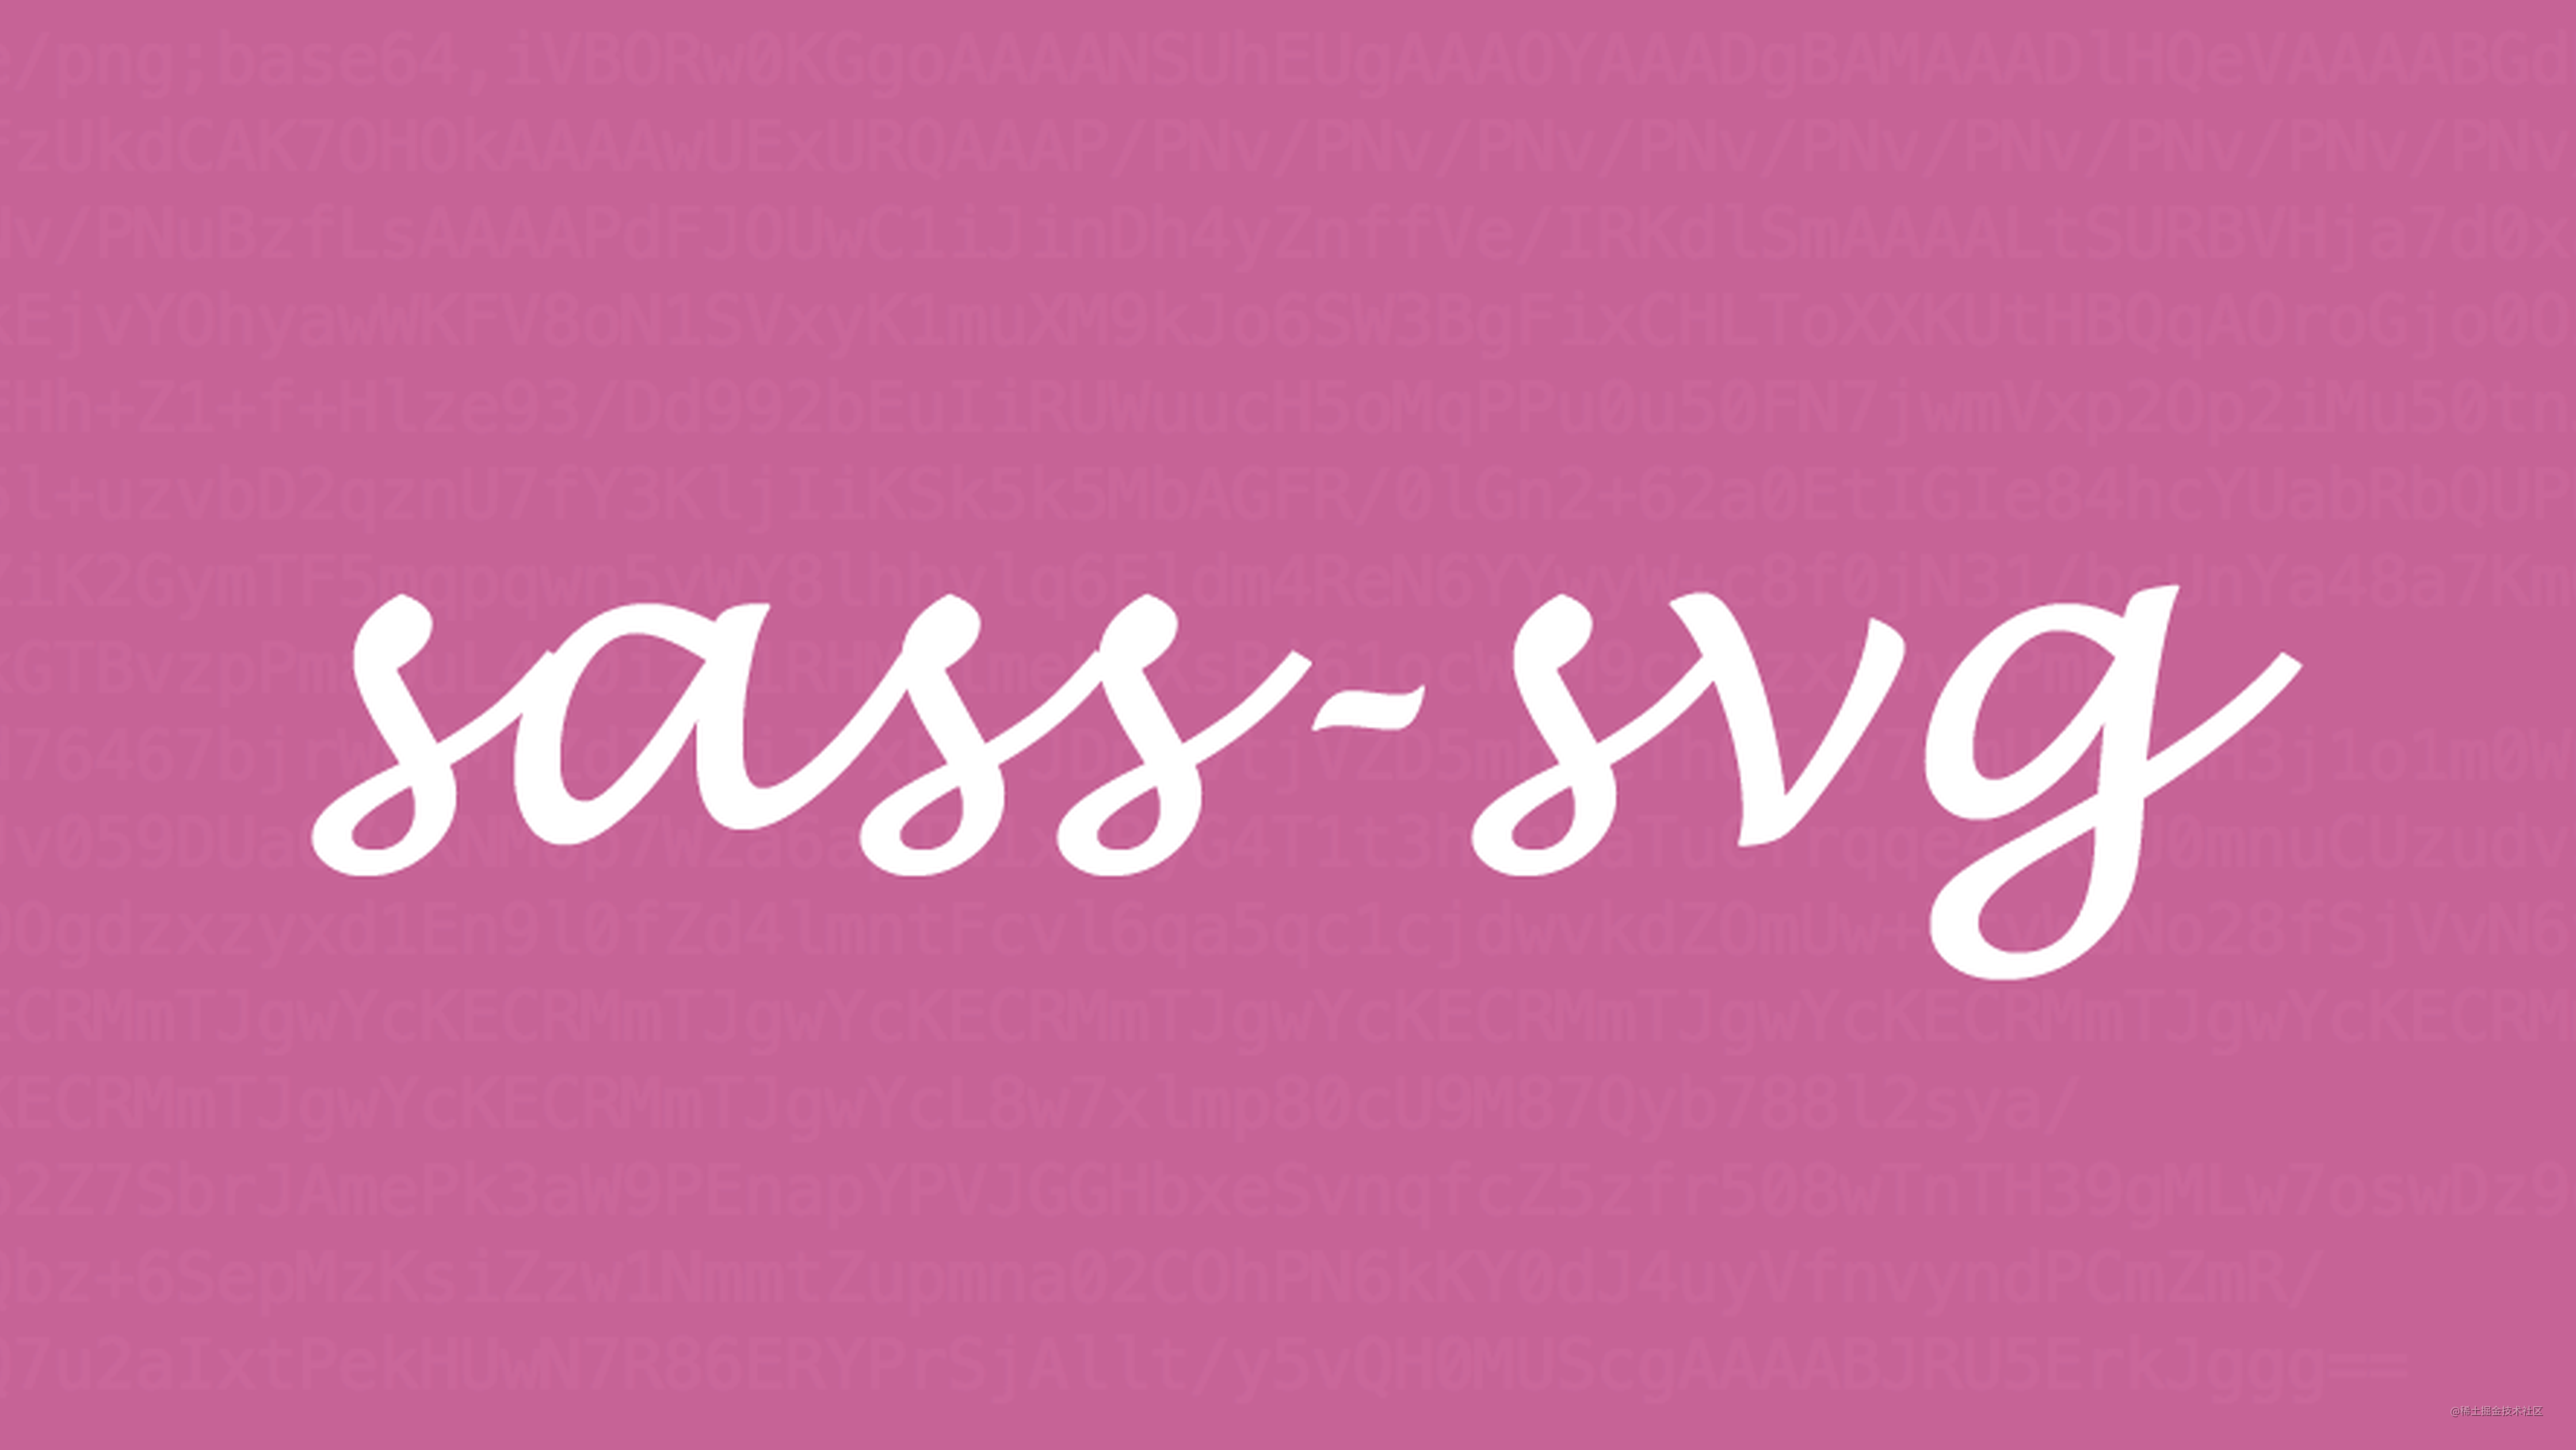 sass-svg 一个内联 SVG 的 SASS 库